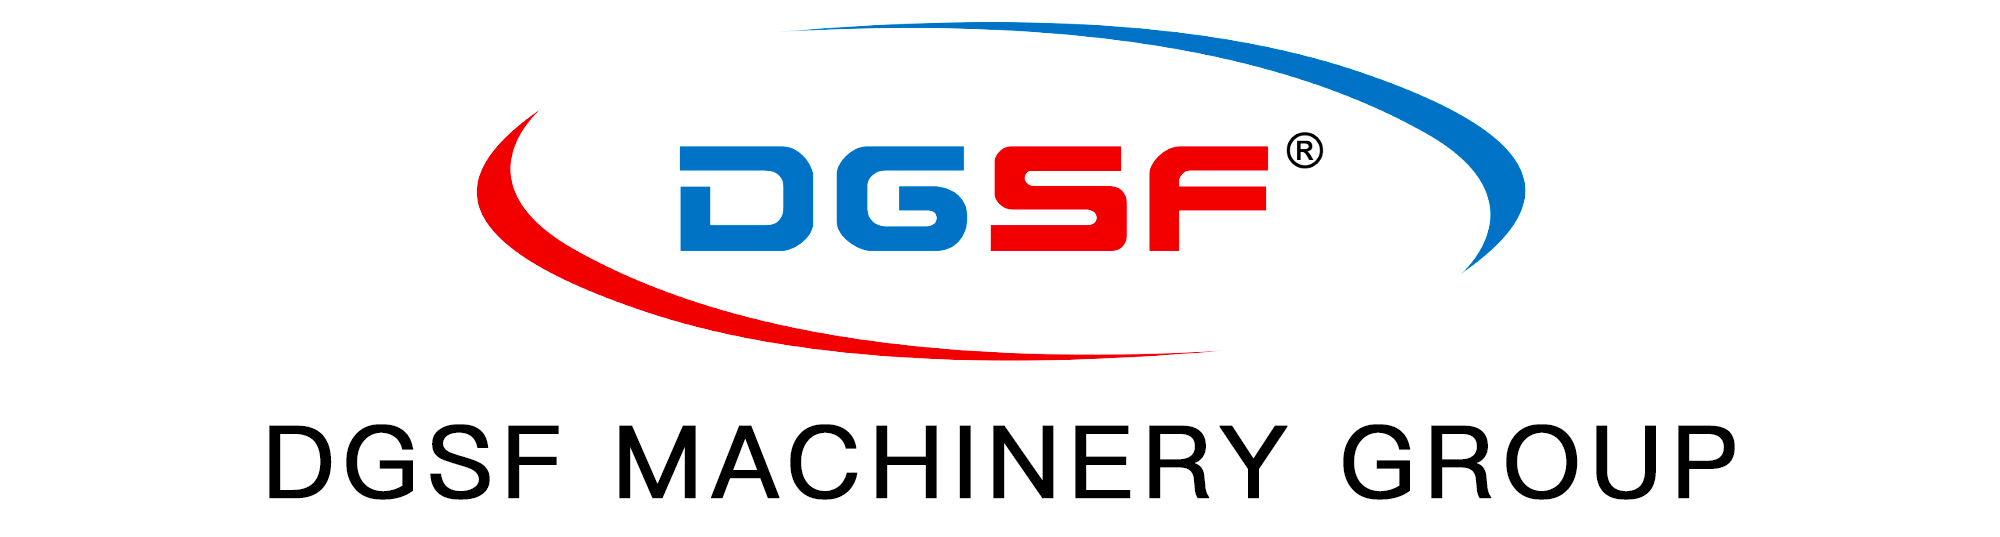 DGSF MACHINERY TECH CO., LTD